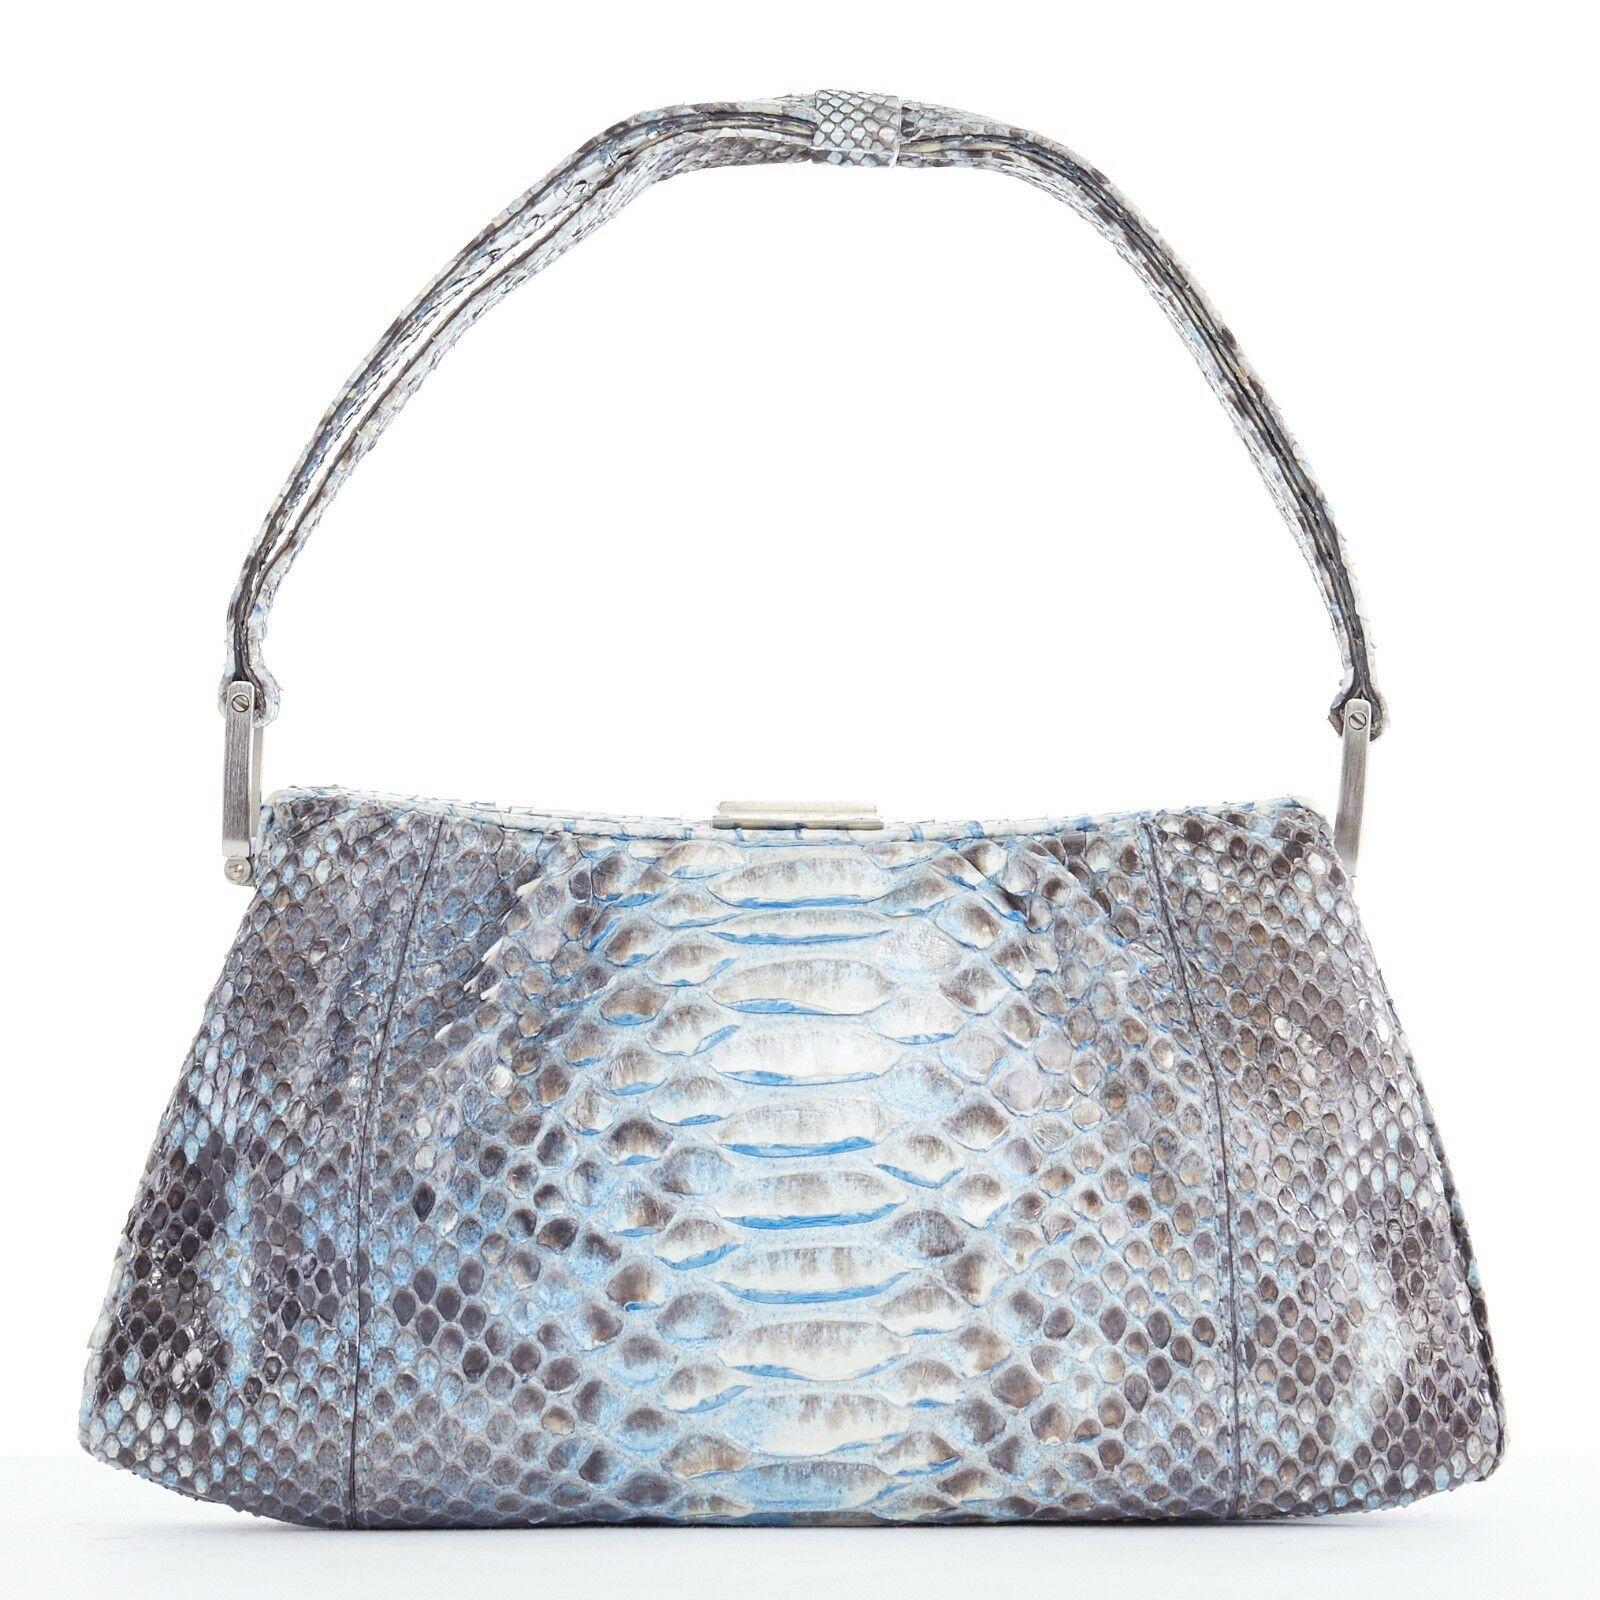 Gray GIORGIO ARMANI holographic blue python leather top handle evening handbag bag